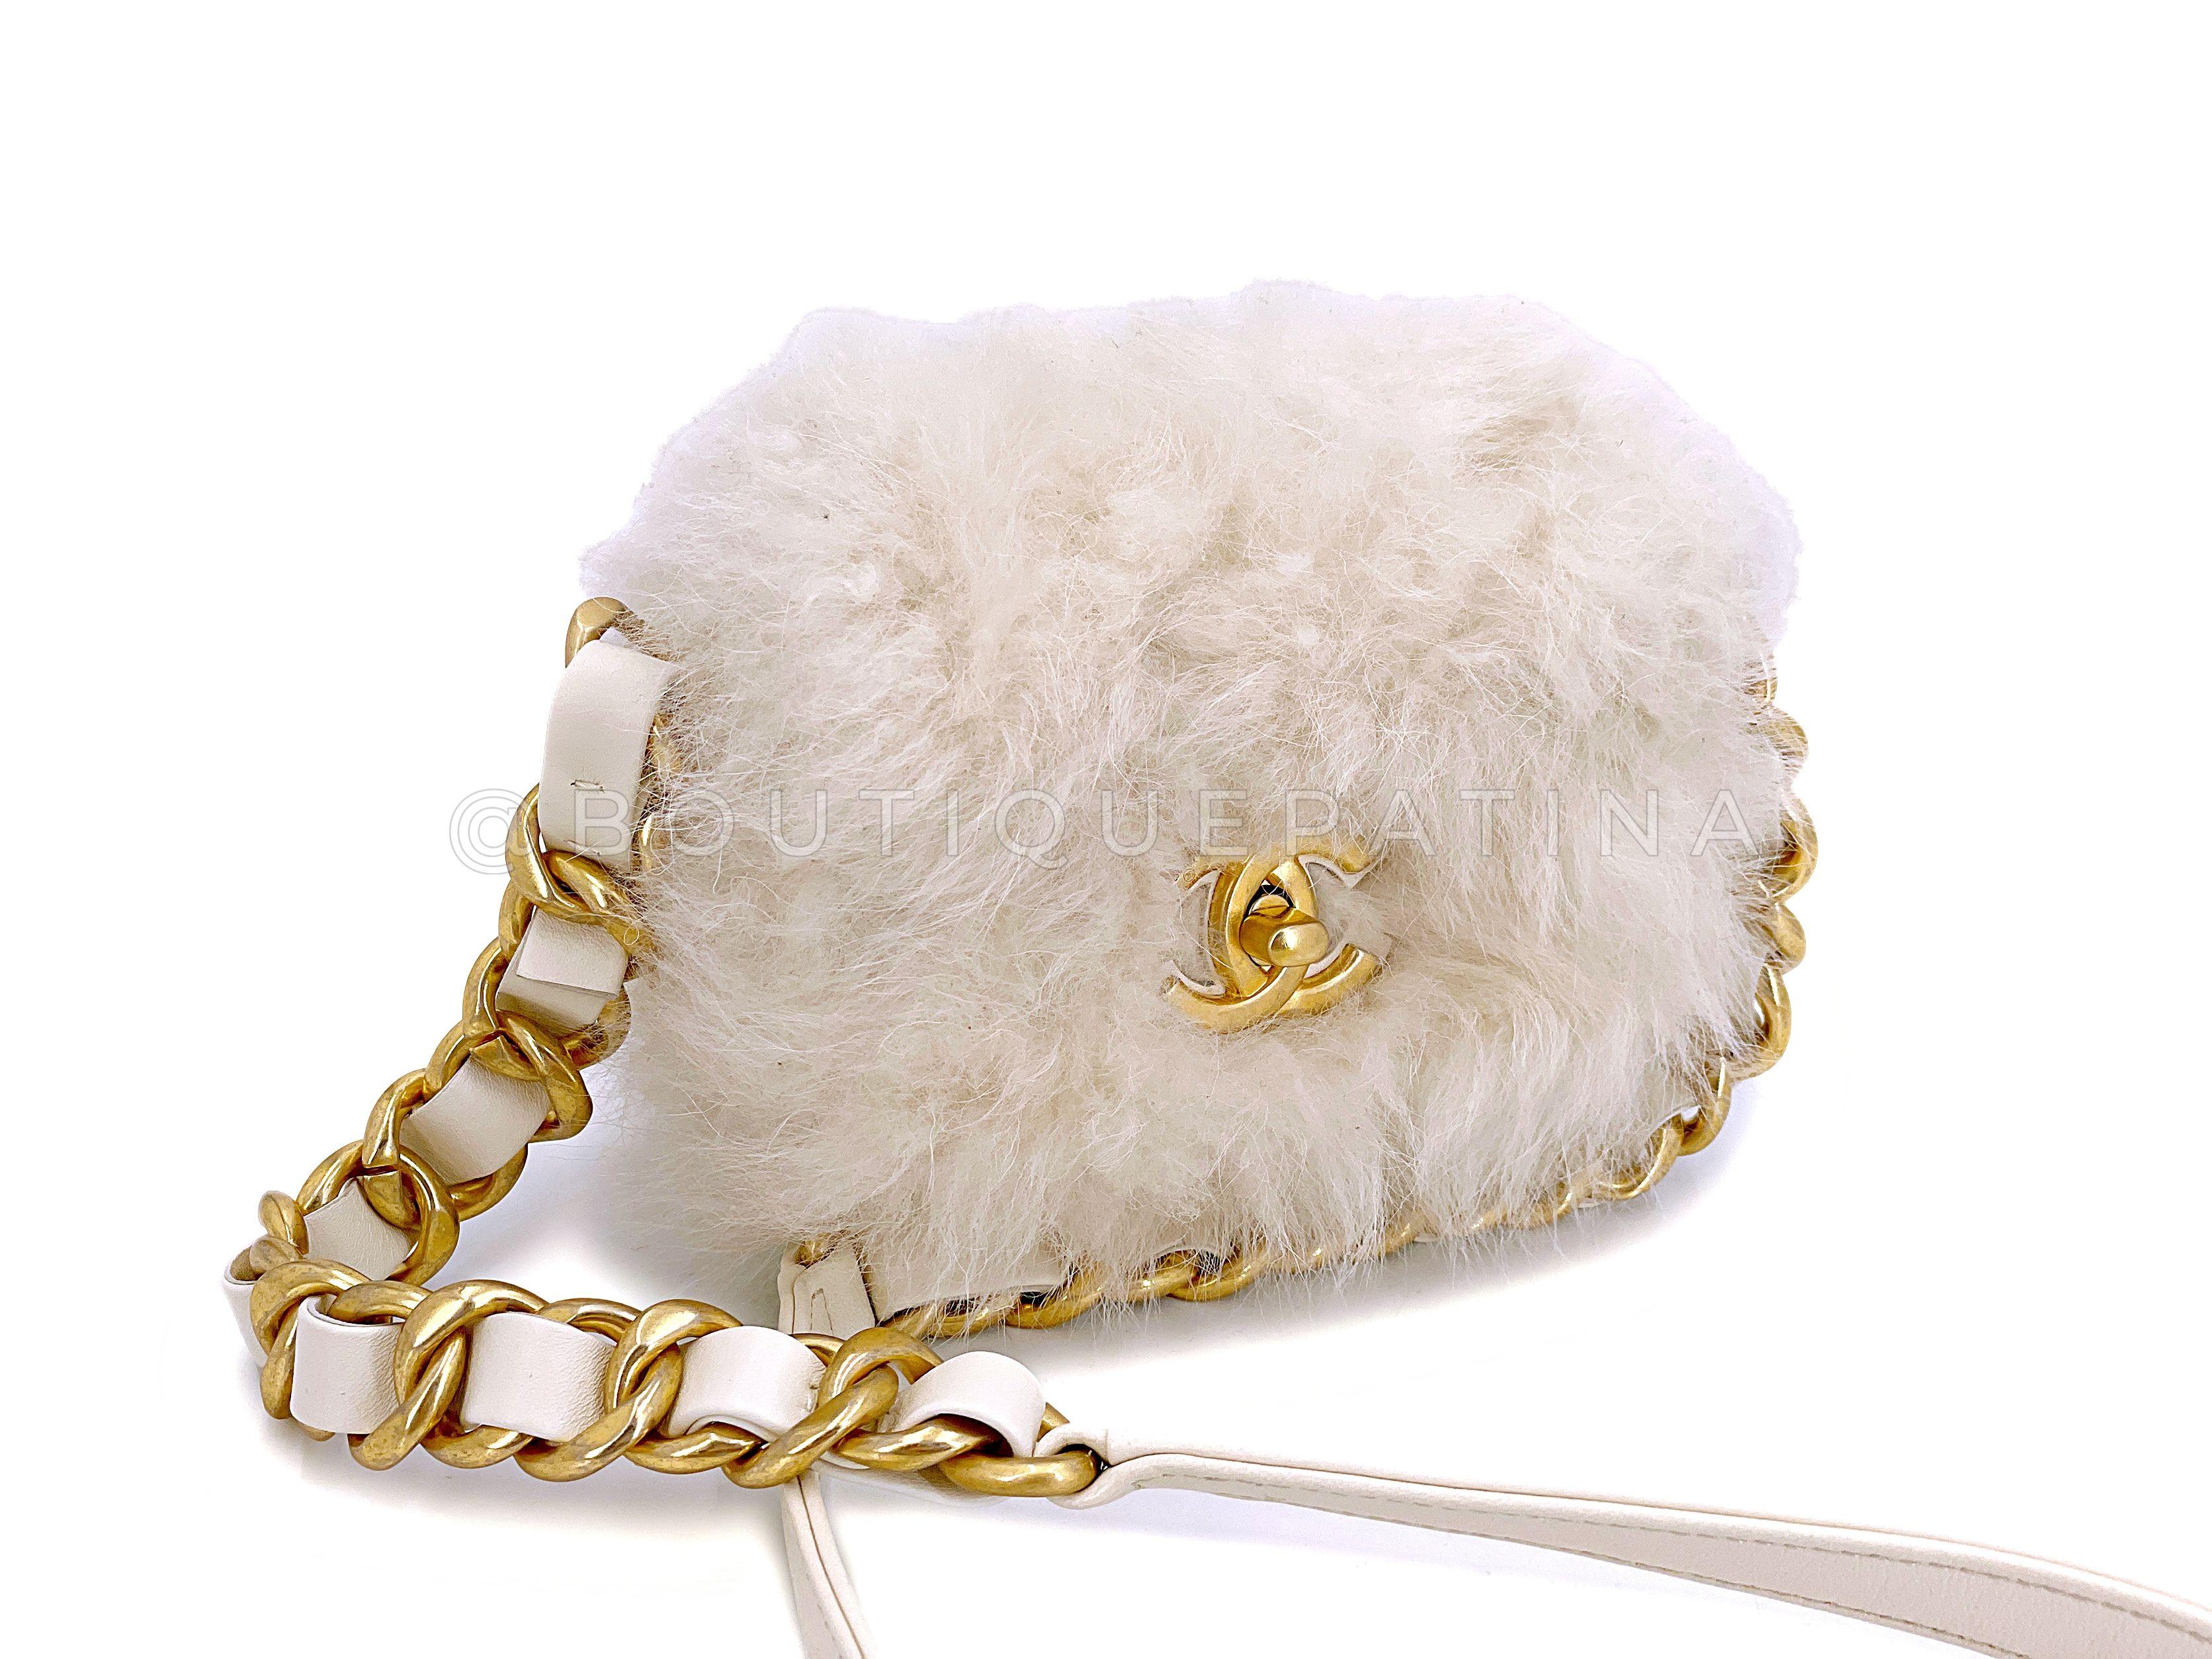 Article du magasin : 67242

Nous aimons Chanel White Ivory Fur Mini Crossbody Flap Bag Chunky Chain  non seulement parce qu'elle est chic et de saison, mais aussi parce qu'elle est respectueuse de l'environnement grâce à la fausse fourrure.